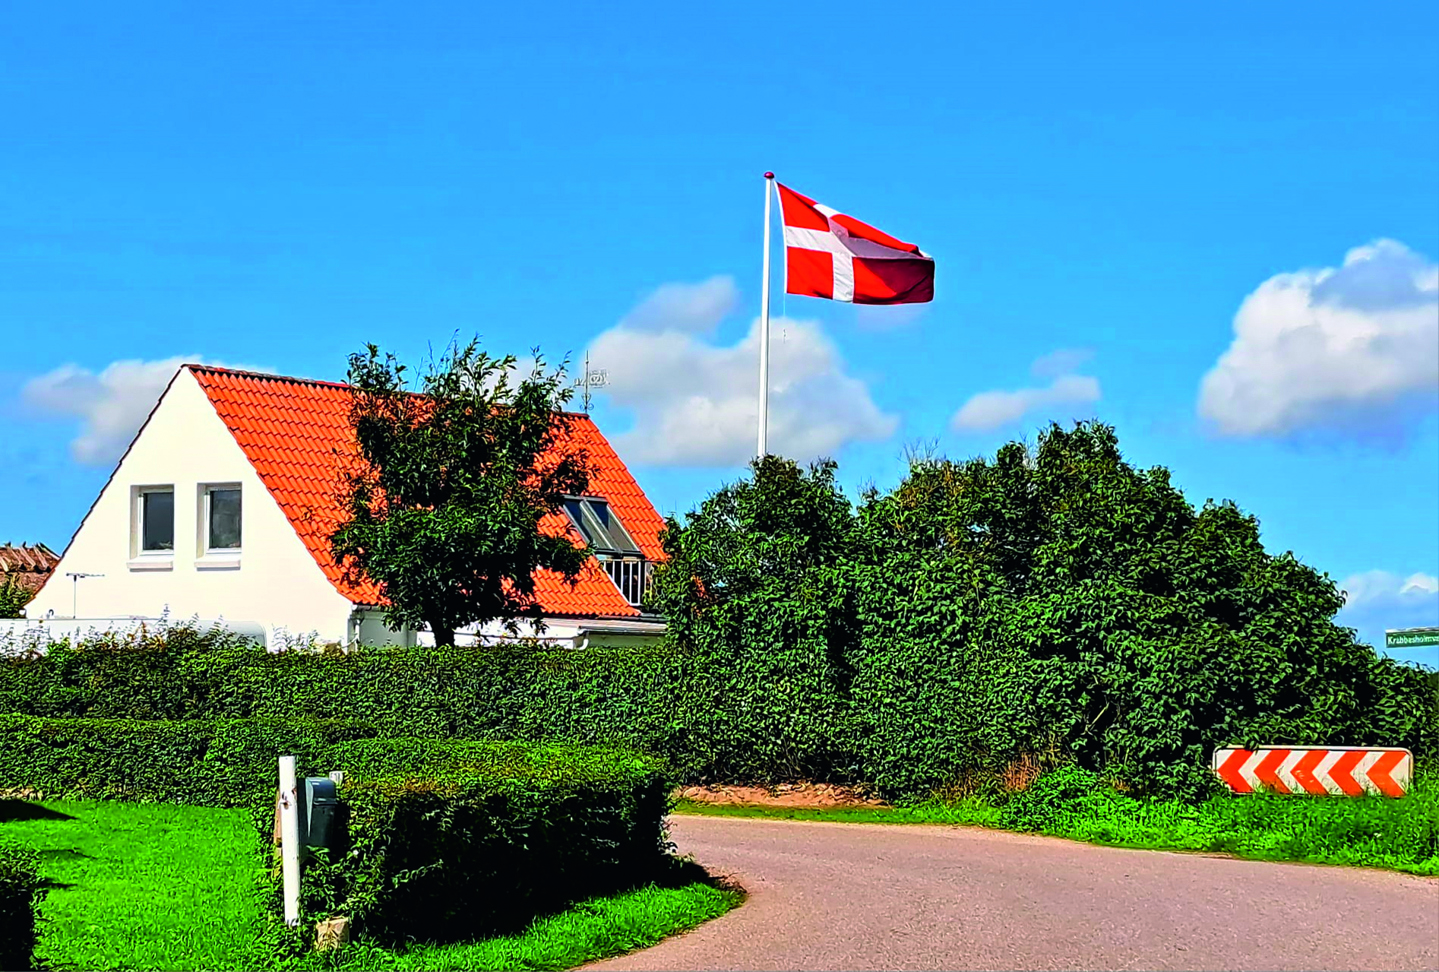 H Denemarken heeft voor de palingvisserij een sterfhuisconstructie opgetuigd.